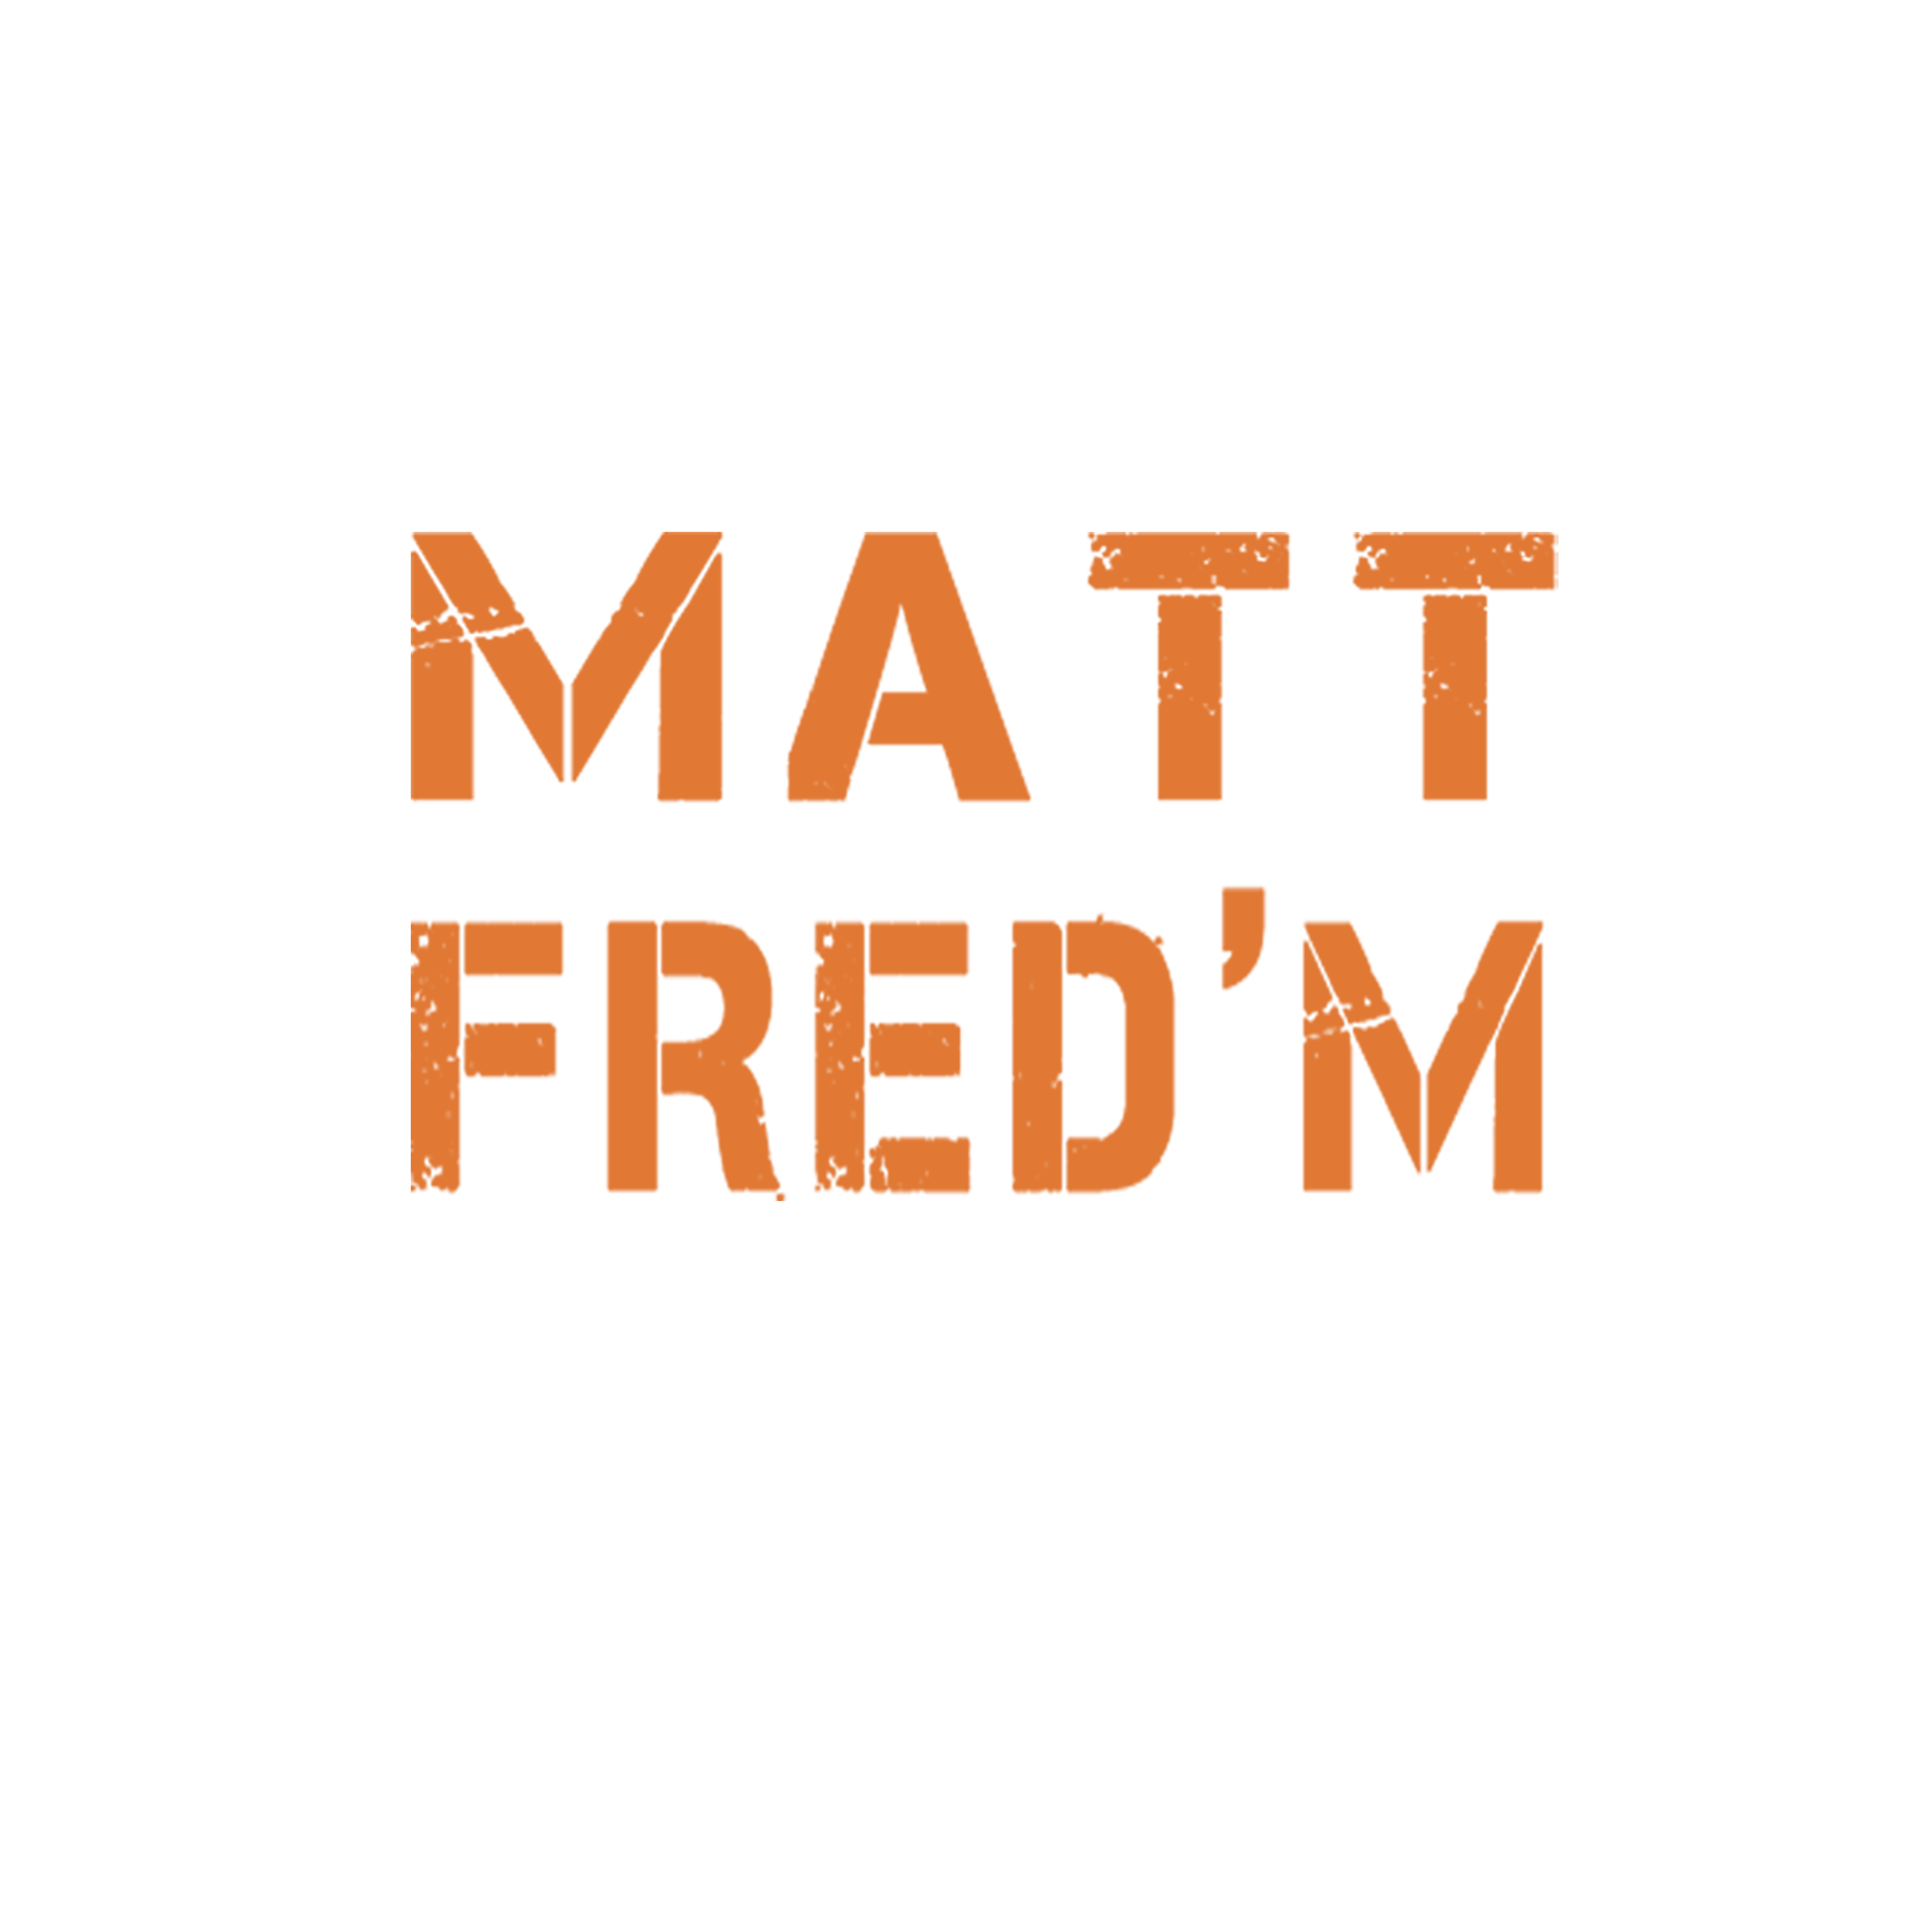 Matt Fred'm